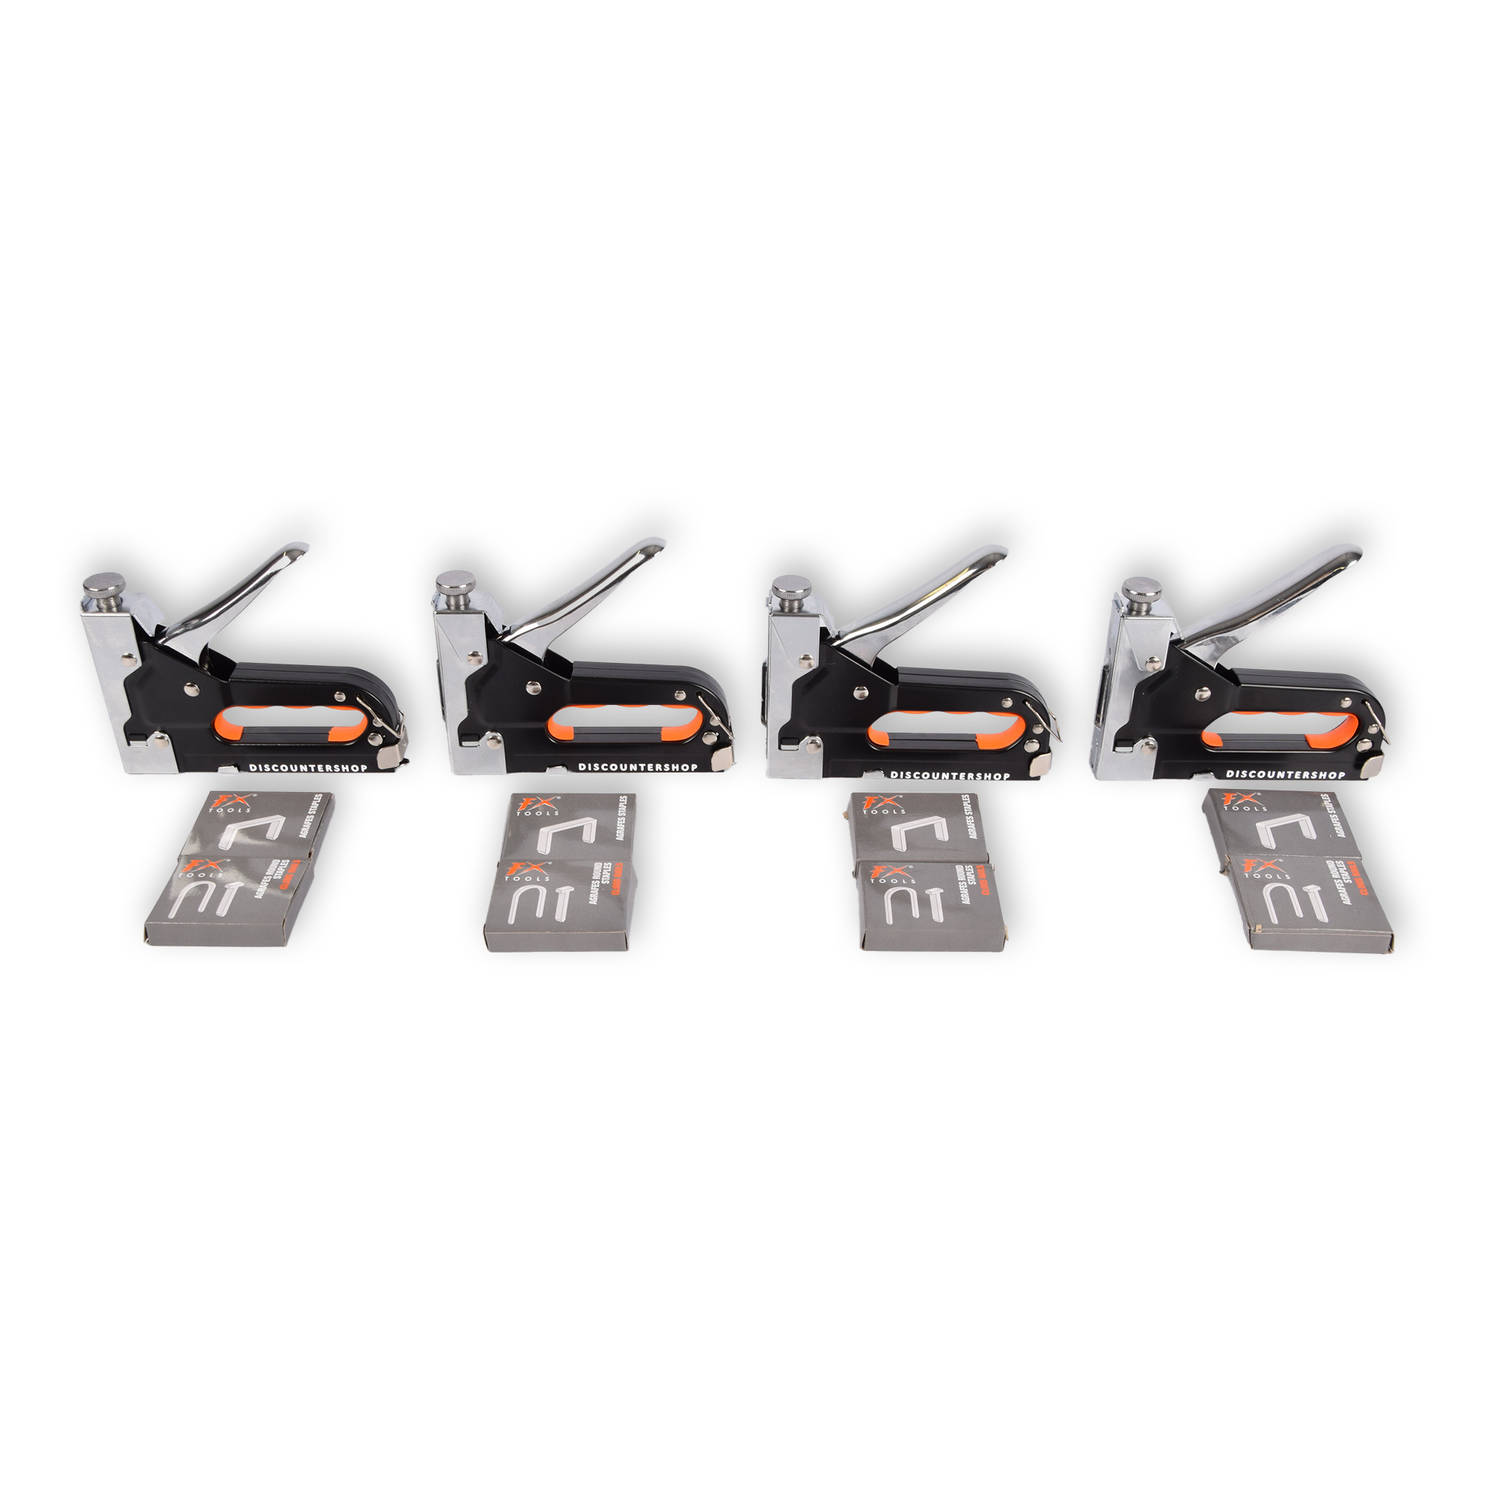 4 stuks Krachtig Nietpistool met Nietjes Robuuste Nietmachine Oranje & Zwart Compact Design 15.5 cm 